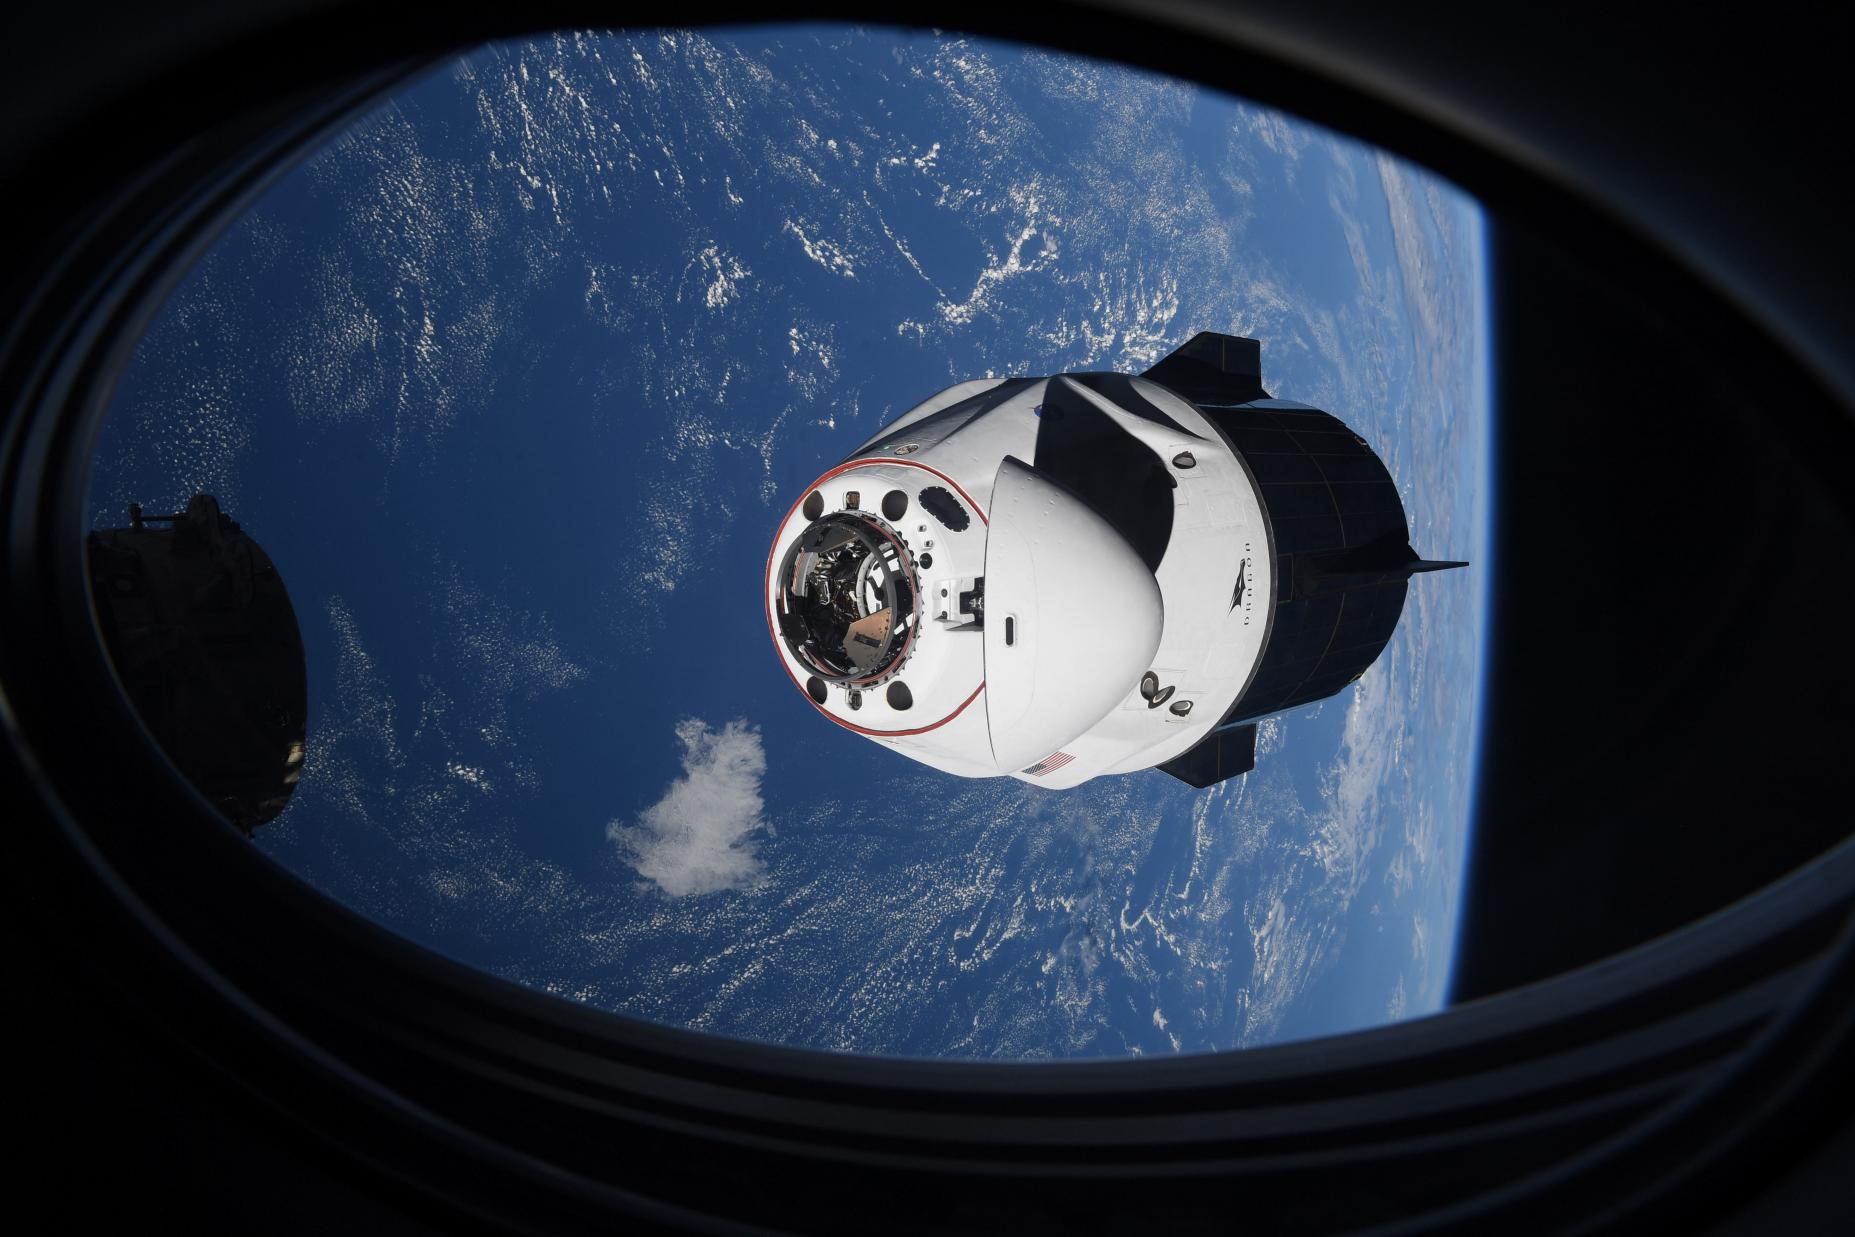 Запуск третьего космонавта Dragon Aces, стыковка с космической станцией